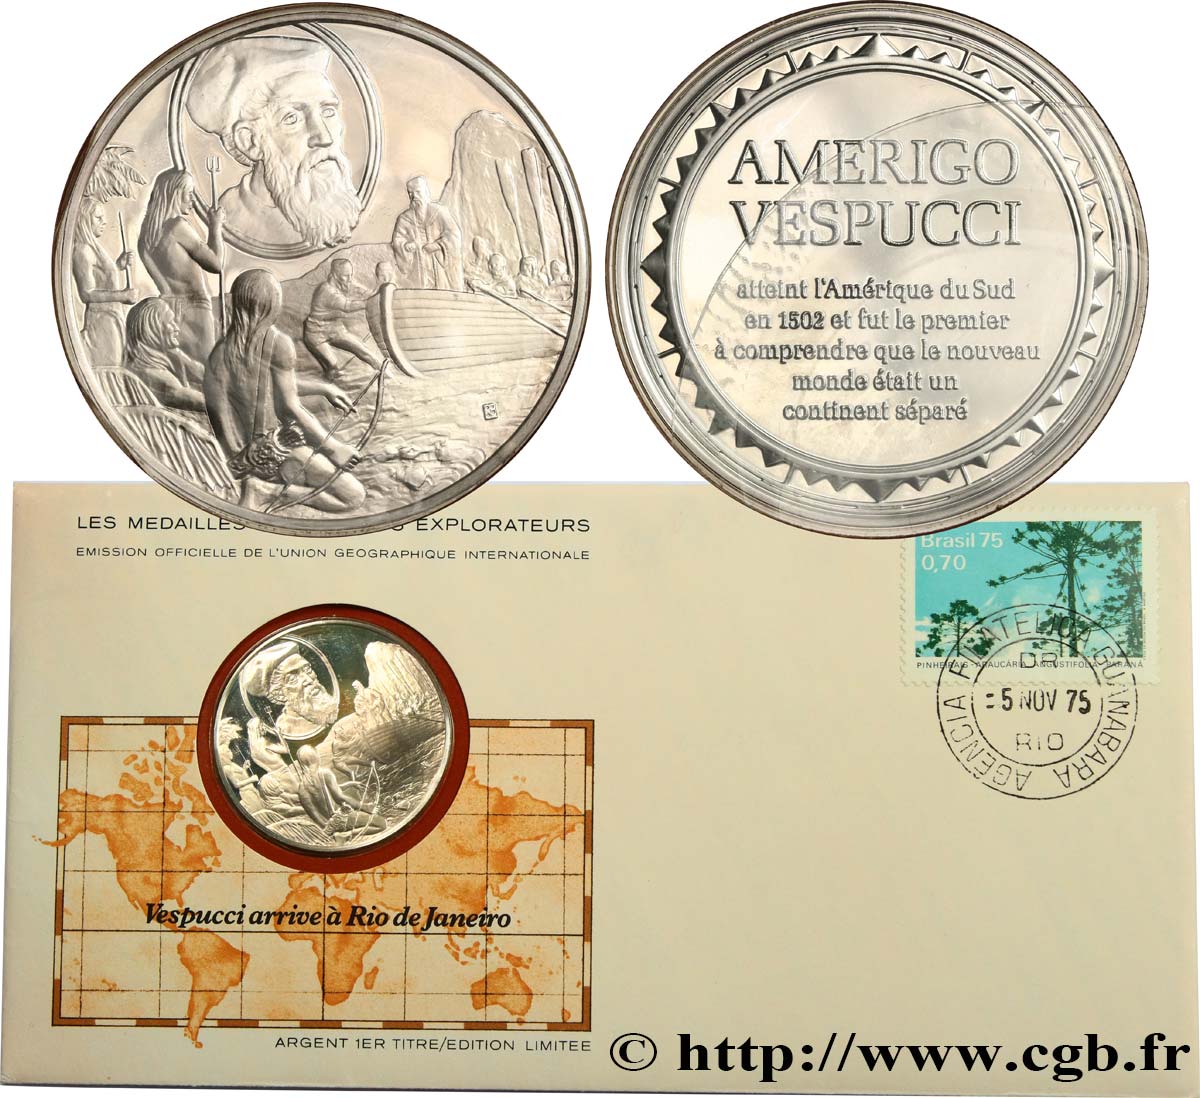 THE GREAT EXPLORERS  MEDALS Enveloppe “Timbre médaille”, Vespucci arrive à Rio de Janeiro MS